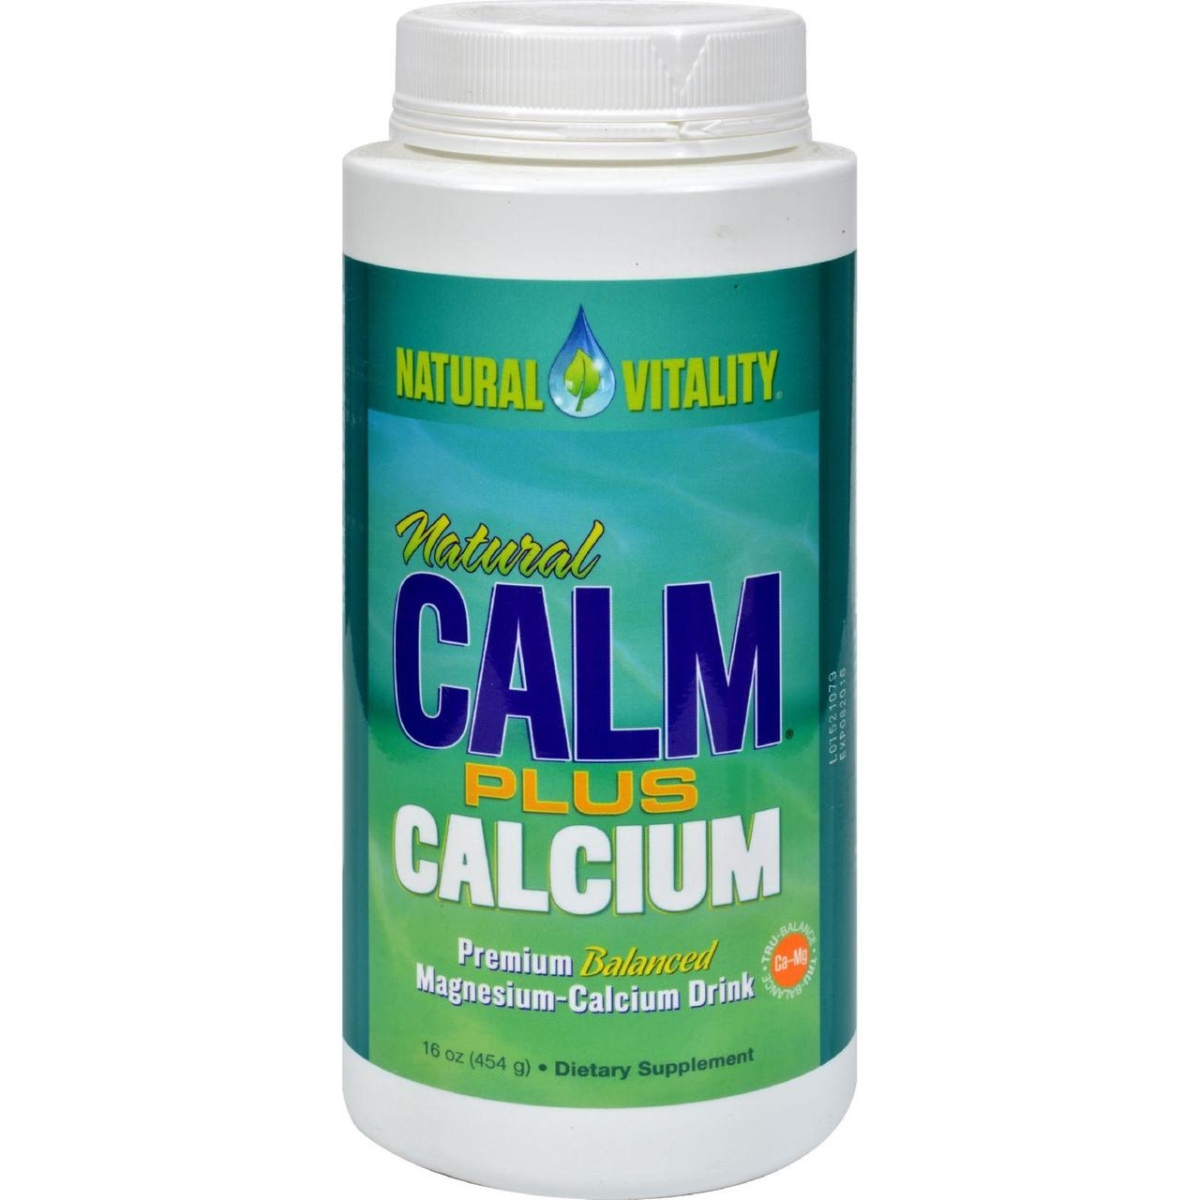 Hg0821736 16 Oz Natural Calm Plus Calcium